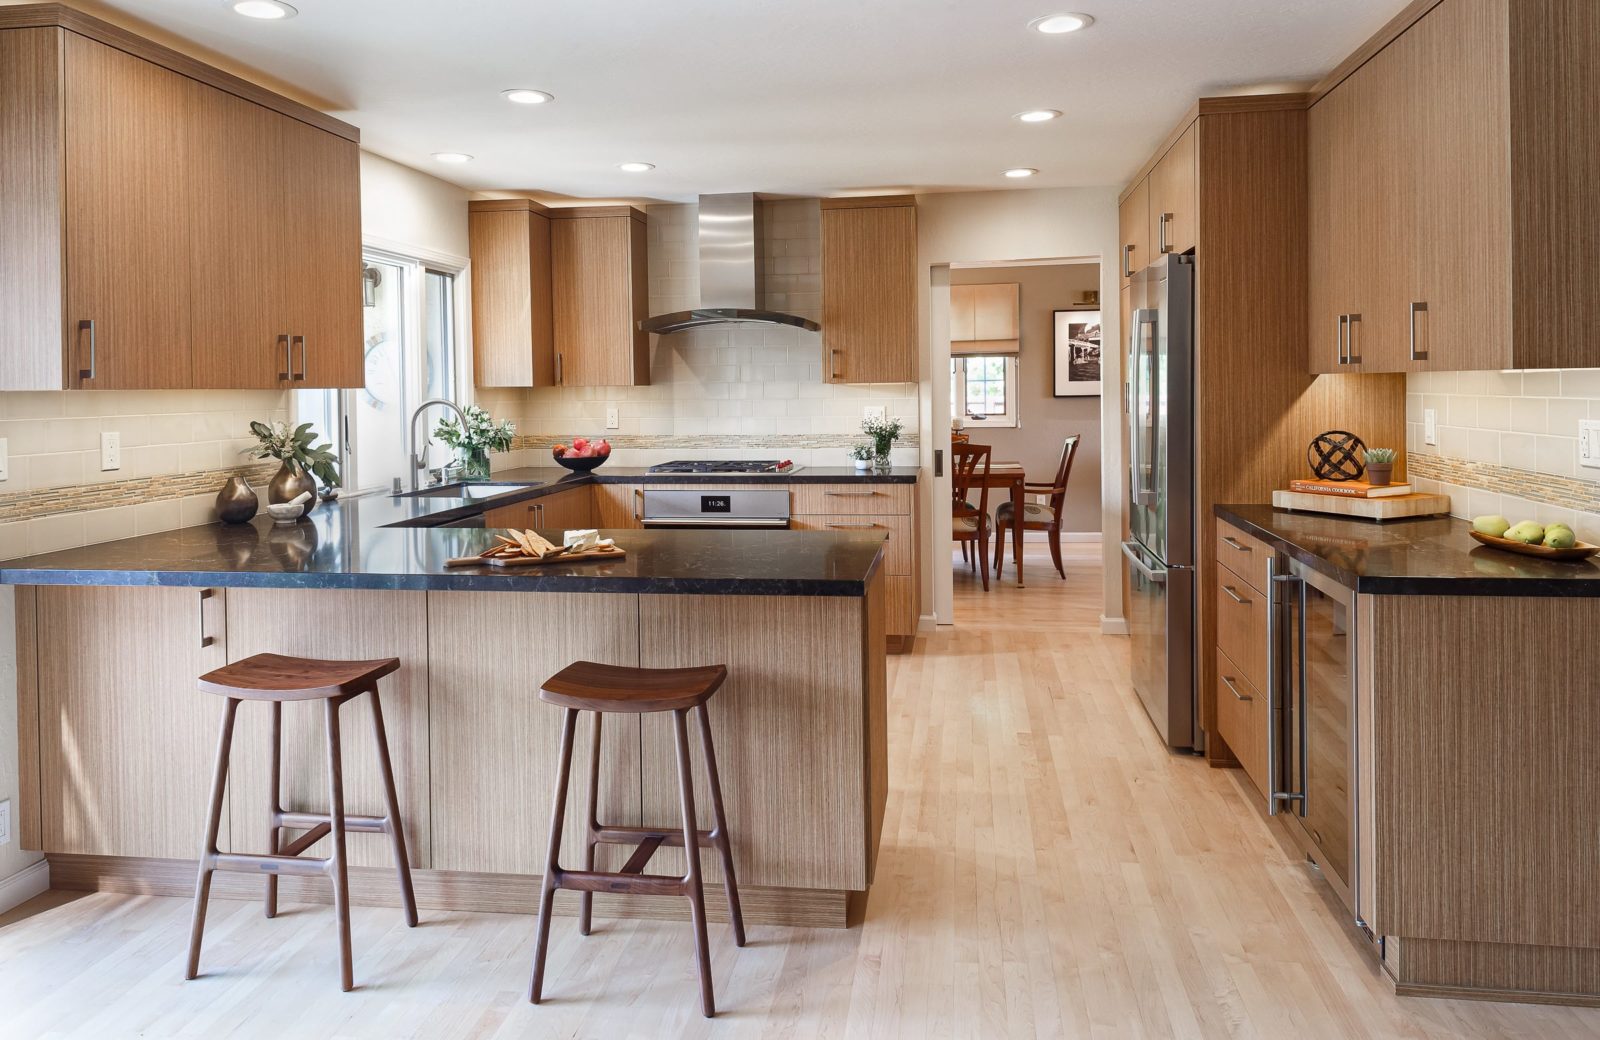 175k kitchen transitional kitchen remodel design melamine, slab front wood cabinets